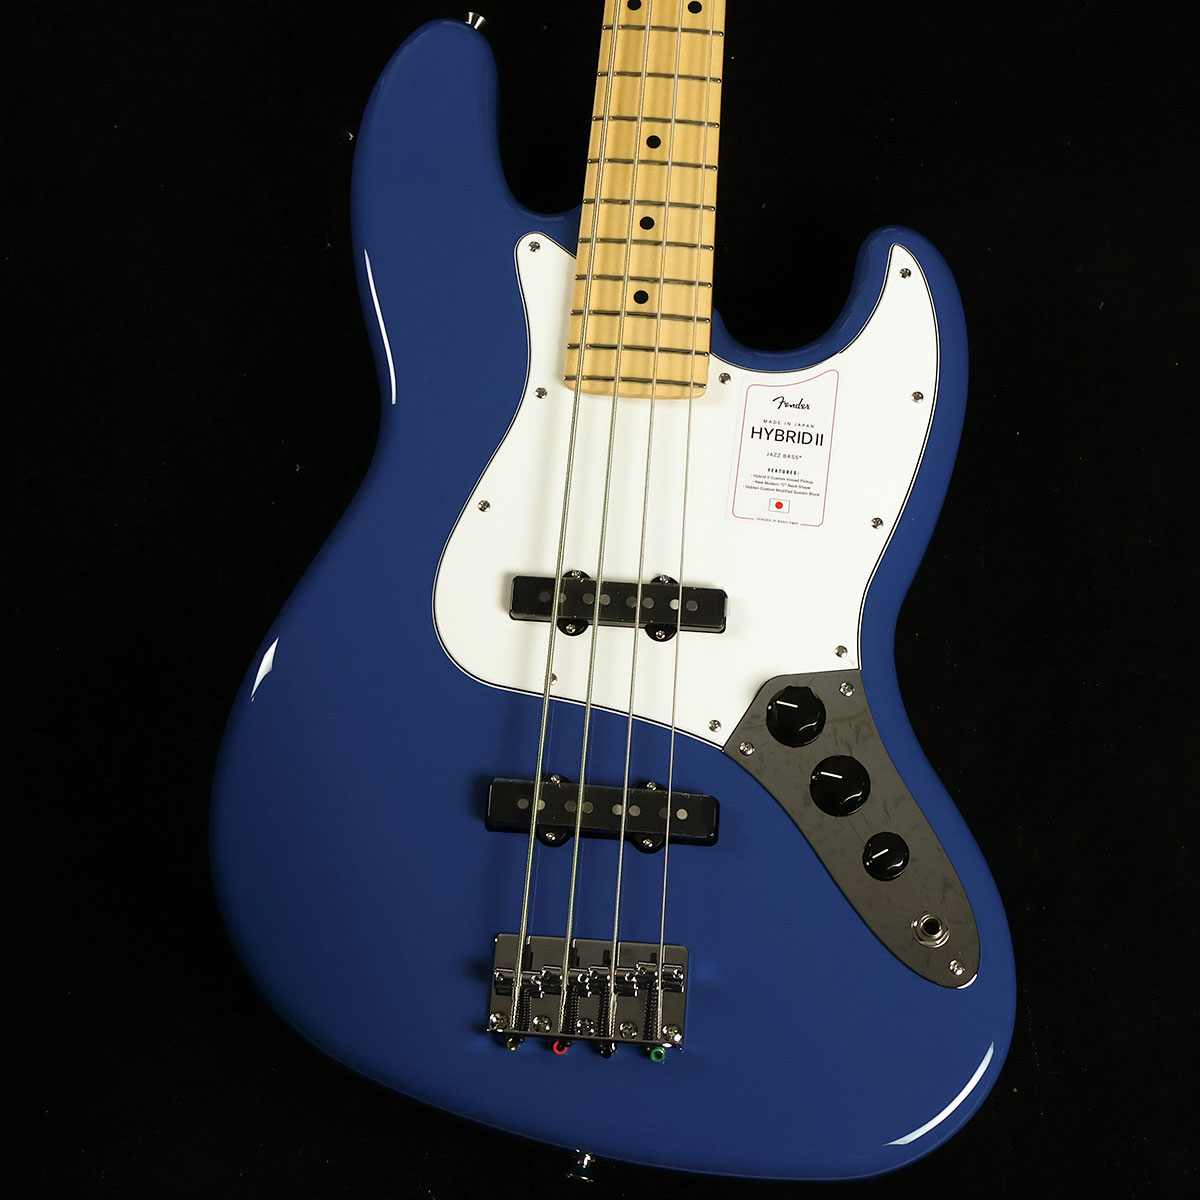 Made in Japan Hybrid II Jazz Bass Maple Fingerboard Forest Blue S/N:JD23026530【特徴】Hybrid II Jazz Bass は、定評あるアルダーボディに新設計のHybrid II Custom Voiced Single Coilピックアップを装備し、ヴィンテージスタイルのブリッジの下にはサスティンブロックを搭載。ヴィンテージスタイルチューナー、サテンフィニッシュのネック、Modern "C"シェイプに9.5インチラジアスの指板とナロートールフレットがスムーズなプレイヤビリティを提供します。より現代的な演奏スタイルに対応したハイブリッドシリーズがさらに進化しました。プレイヤーを選ばない握り込みを実現したモダンCシェイプネック、22フレット使用の採用に加え、抜けにくい構造のPure Tone Jack，キャパシターにはオレンジドロップを使用しています。ナット幅もわずかに狭くなっています。【商品のコンディション】新品・未展示品・メーカー保証付属・現品画像掲載こちらの個体は検品・調整後、専用倉庫にて保管しFender純正箱でお届けする安心の画像現物個体販売品です。【担当者コメント】2021年3月にリニューアルしたハイブリッドシリーズ、こちらのフォレストブルーは新たに採用されたカラーとなります。この商品についての詳しいお問い合わせは TEL：0570-020-025 または「お問い合わせフォーム」よりお願いします。【詳細情報】ボディAlderボディフィニッシュGloss PolyurethaneボディシェイプJazz Bassブリッジ4-Saddle Vintage-StyleブリッジピックアップHybrid II Custom Voiced Single Coil Jazz BassコンフィギュレーションSSコントロールノブBlack PlasticコントロールVolume 1. (Middle Pickup), Volume 2. (Bridge Pickup), Master ToneフィンガーボードMapleフィンガーボードラジアス9.5" (241 mm)フレットサイズNarrow TallハードウェアフィニッシュNickel/ChromeミドルピックアップHybrid II Custom Voiced Single Coil Jazz BassネックフィニッシュSatin Urethane Finish on Back, Gloss Urethane Finish on FrontネックMapleネックシェイプModern "C"フレット数21ナットの素材Boneナット幅1.5" (38.1 mm)ピックガード3-Ply BlackピックアップコンフィギュレーションSSピックアップスイッチNoneポジションインレイBlack Dotスケール34" (86.36 cm)ナットBoneチューニングマシーンVintage-Style重量：4.33kg付属品：ソフトケース、保証書、レンチ【ご注意】●メーカー保証付き。メーカー保証期間終了後も島村楽器全店で通常よりもお安く修理、調整いたします。●この商品についての詳しいお問い合わせは TEL：0570-020-025 または「お問い合わせフォーム」よりお願いします。●こちらの商品はミ・ナーラ奈良店でのみ現物をご確認いただけます。未展示品のためご希望の方はミ・ナーラ奈良店スタッフまでお申し付けください。●売却時の商品情報の削除は迅速を心掛けておりますが、万一ご注文後に売り切れとなっておりました場合は誠に申し訳ございませんがご容赦ください。●商品によって、調整等でお届けにお時間をいただく場合がございます。予めご了承ください。■管理コード:0138000664813